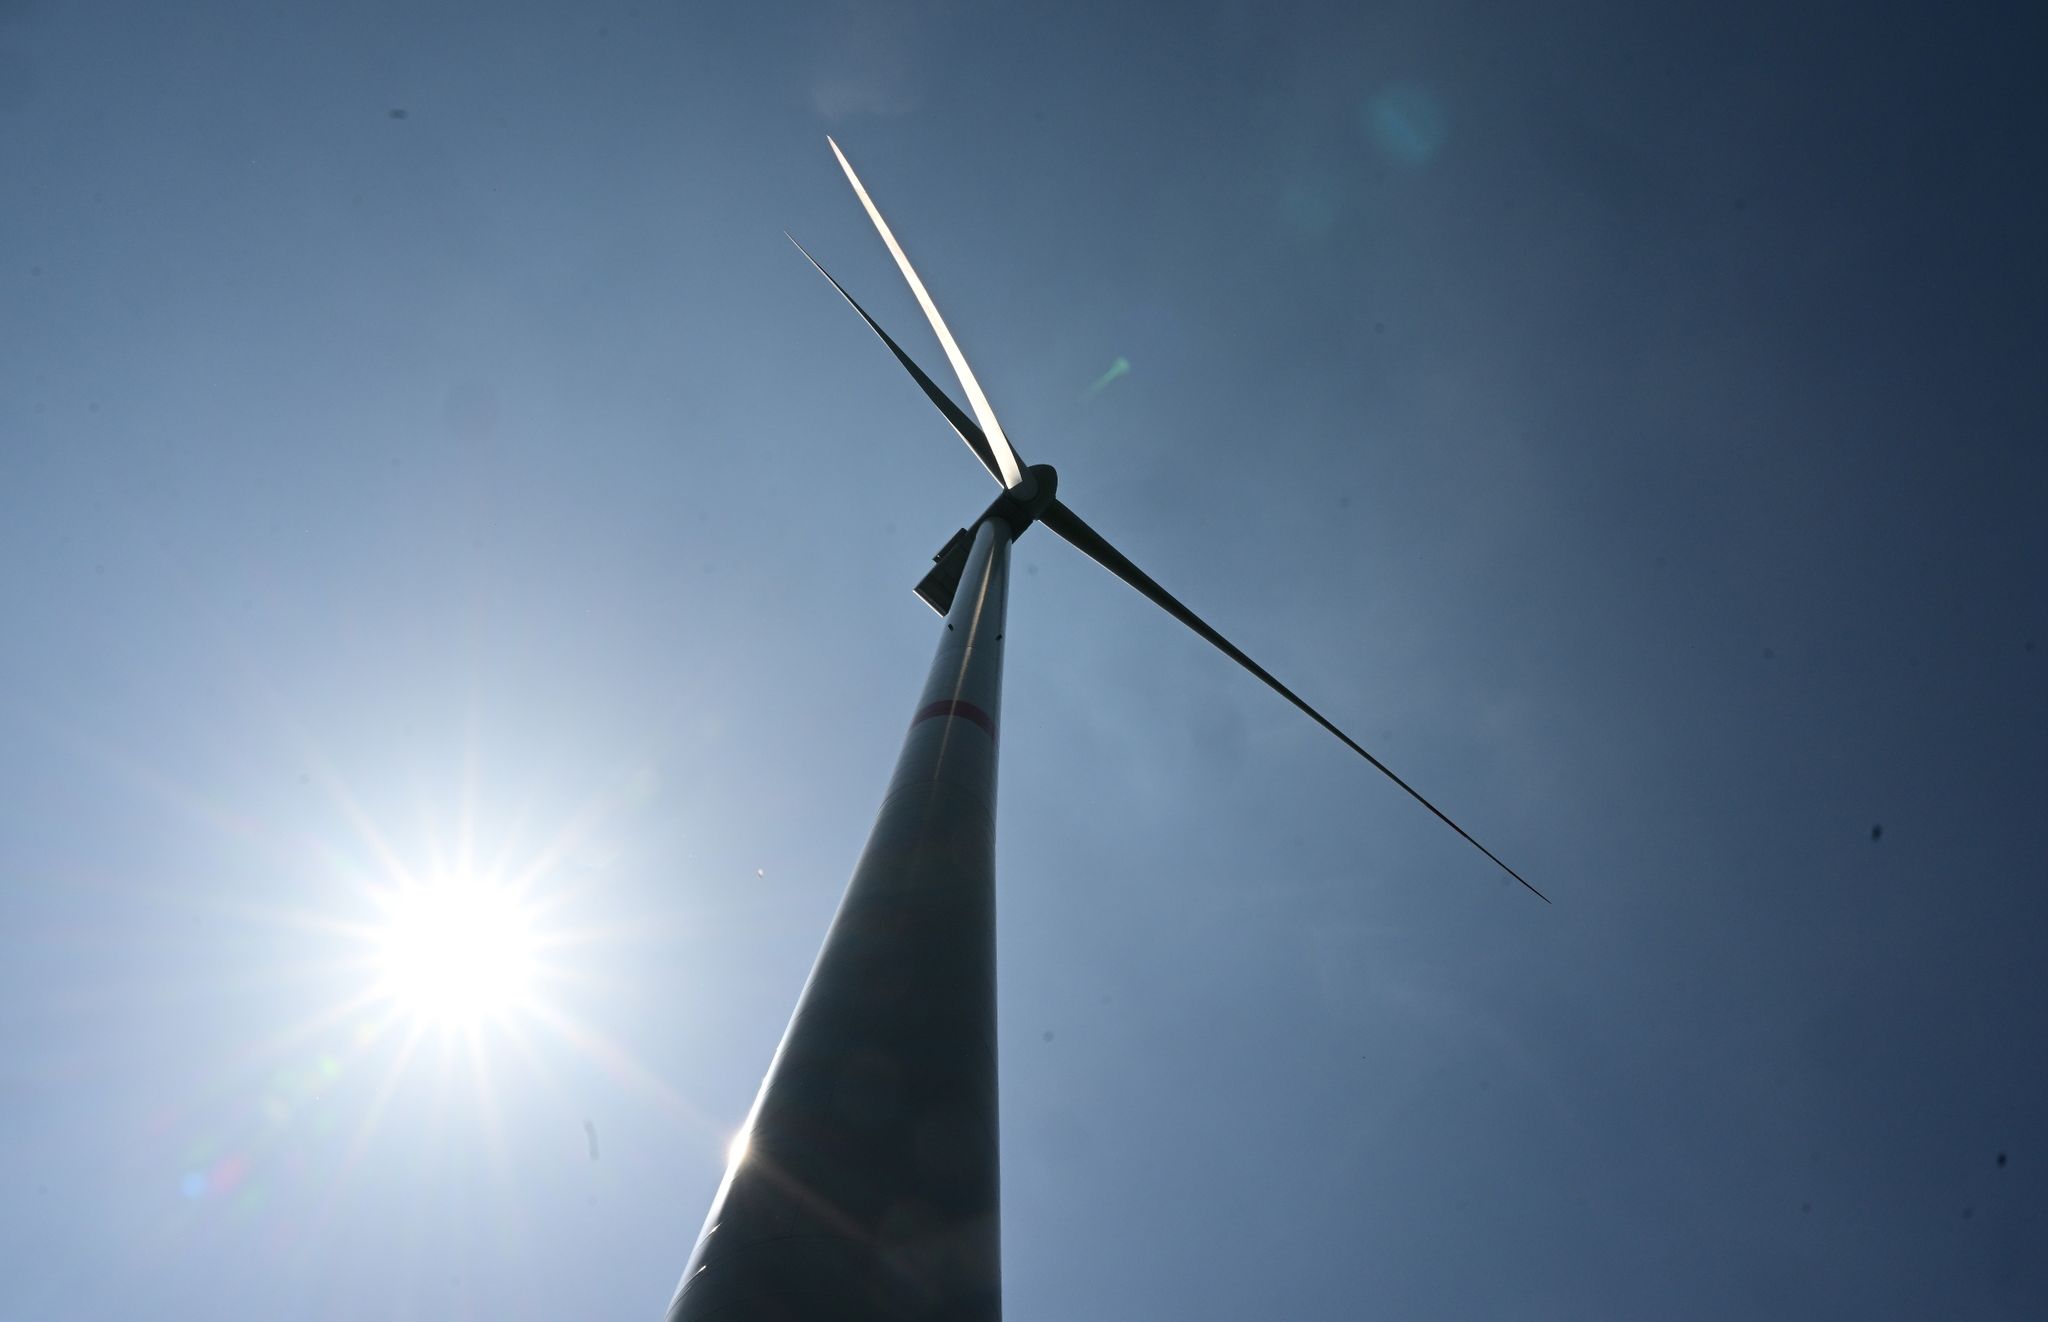 Windenergie steht an der Spitze des Ausbaus, glaubt IEA-Direktor Fatih Birol.